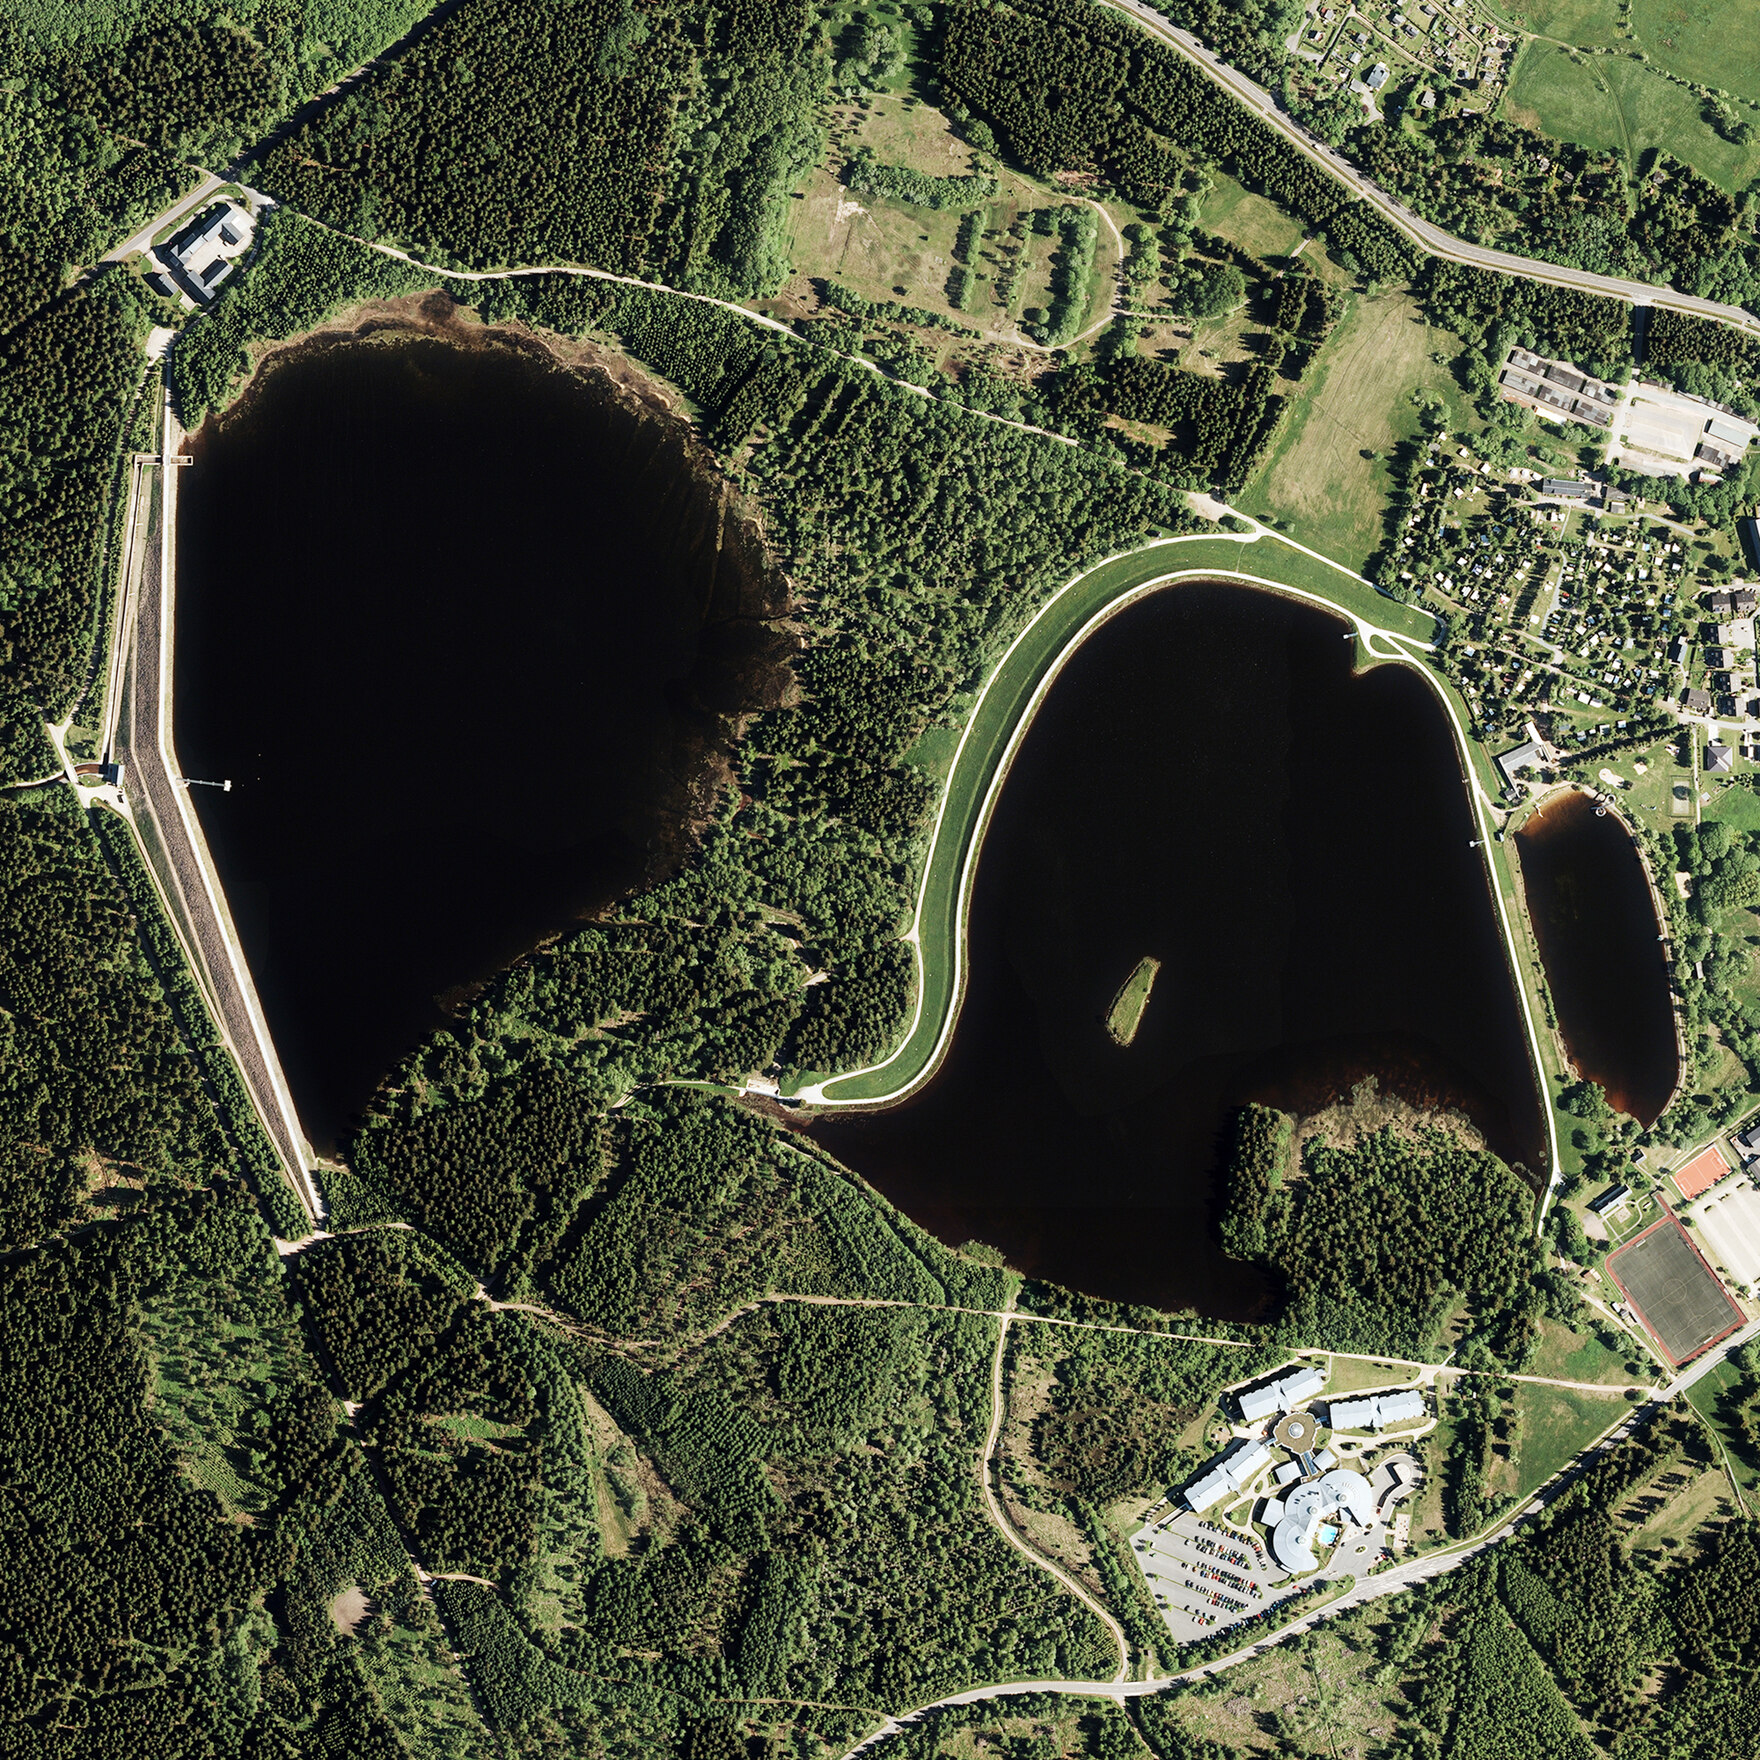 Luftbild der Talsperre Altenberg und der Talsperre Großer Galgenteich